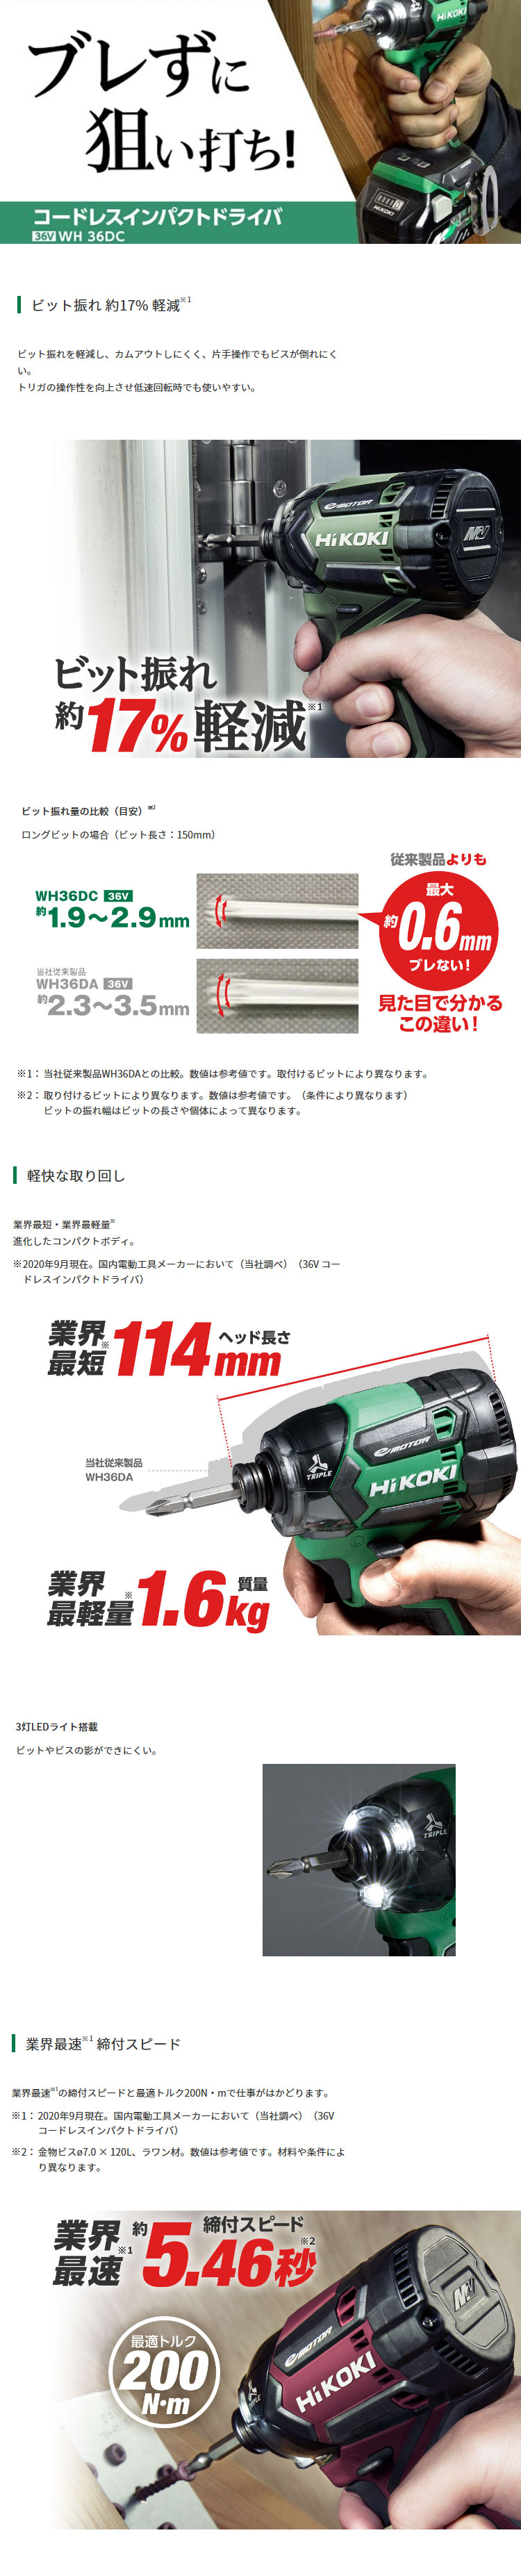 27136円 新製品情報も満載 HiKOKI36Vコードレスインパクトドライバー ストロングブラック WH36DC-2XPBS